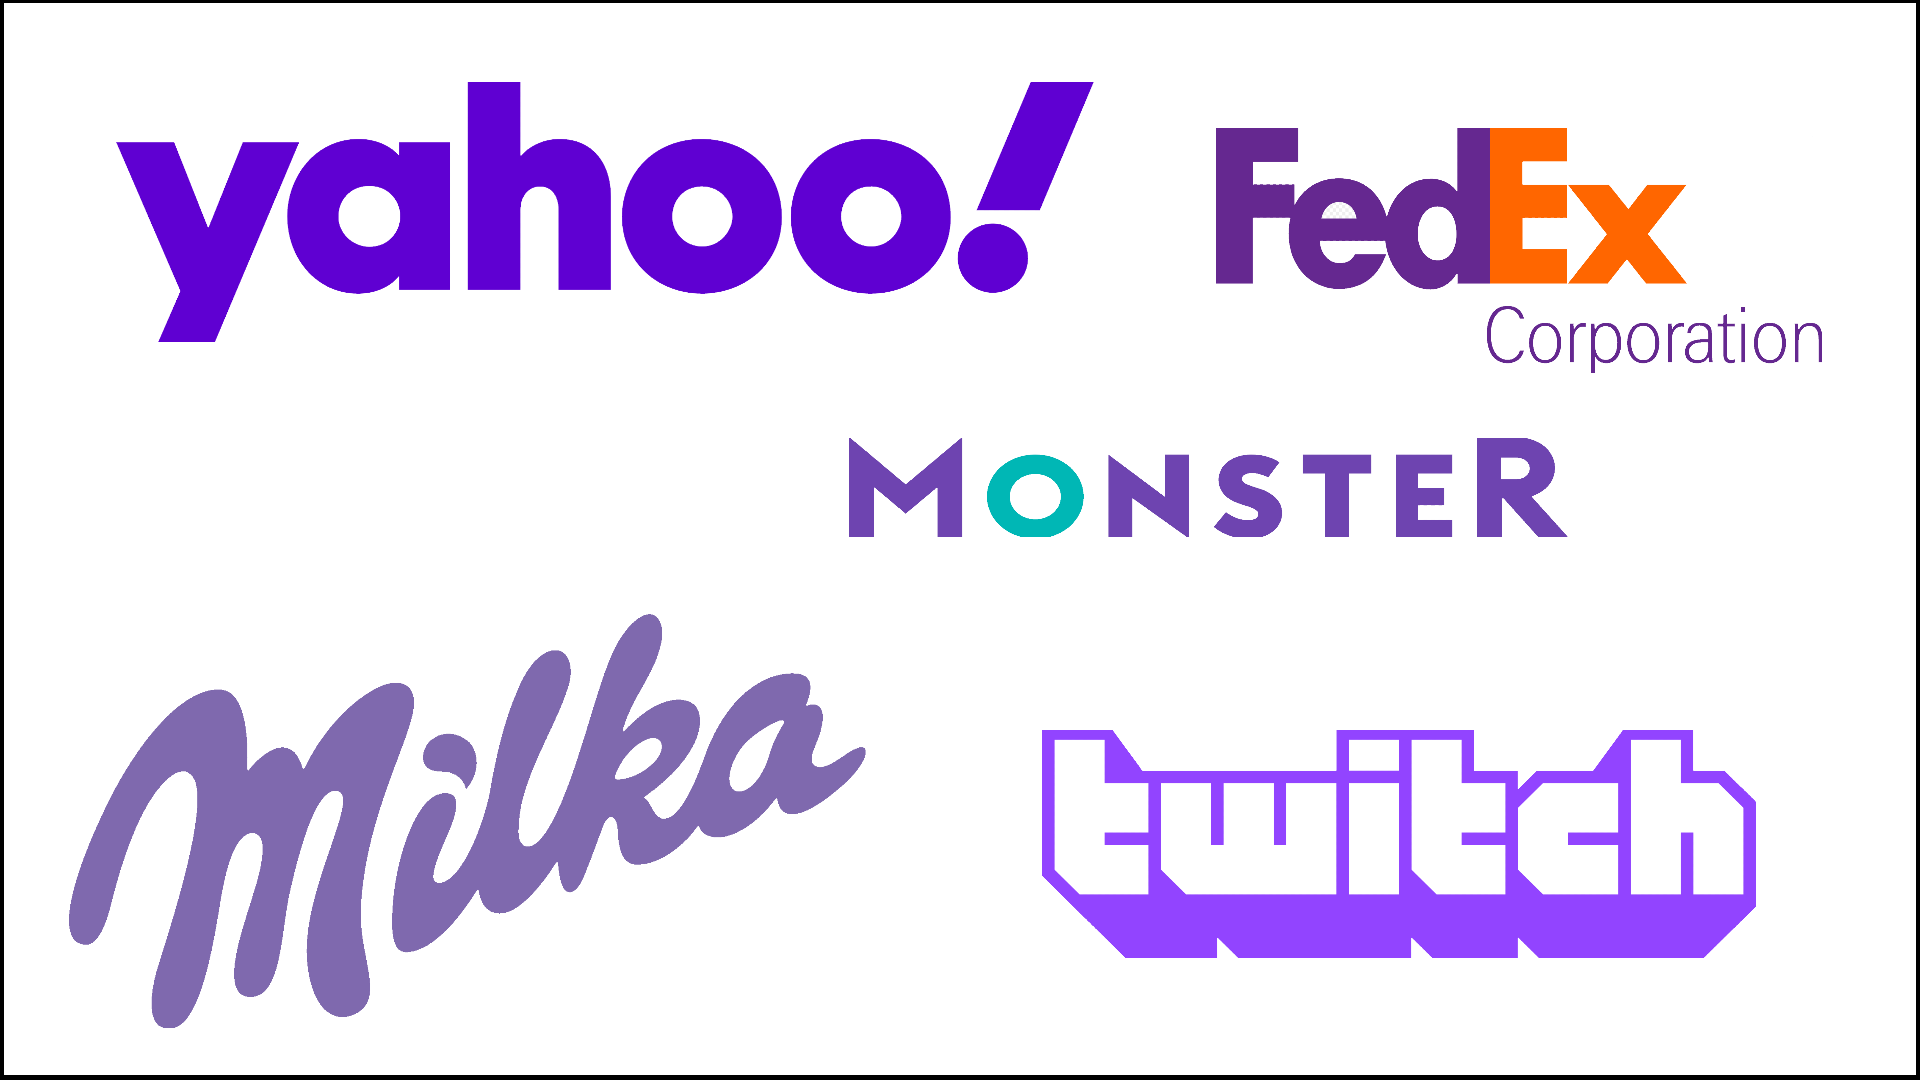 Beispiele für violette oder lilafarbene Logos